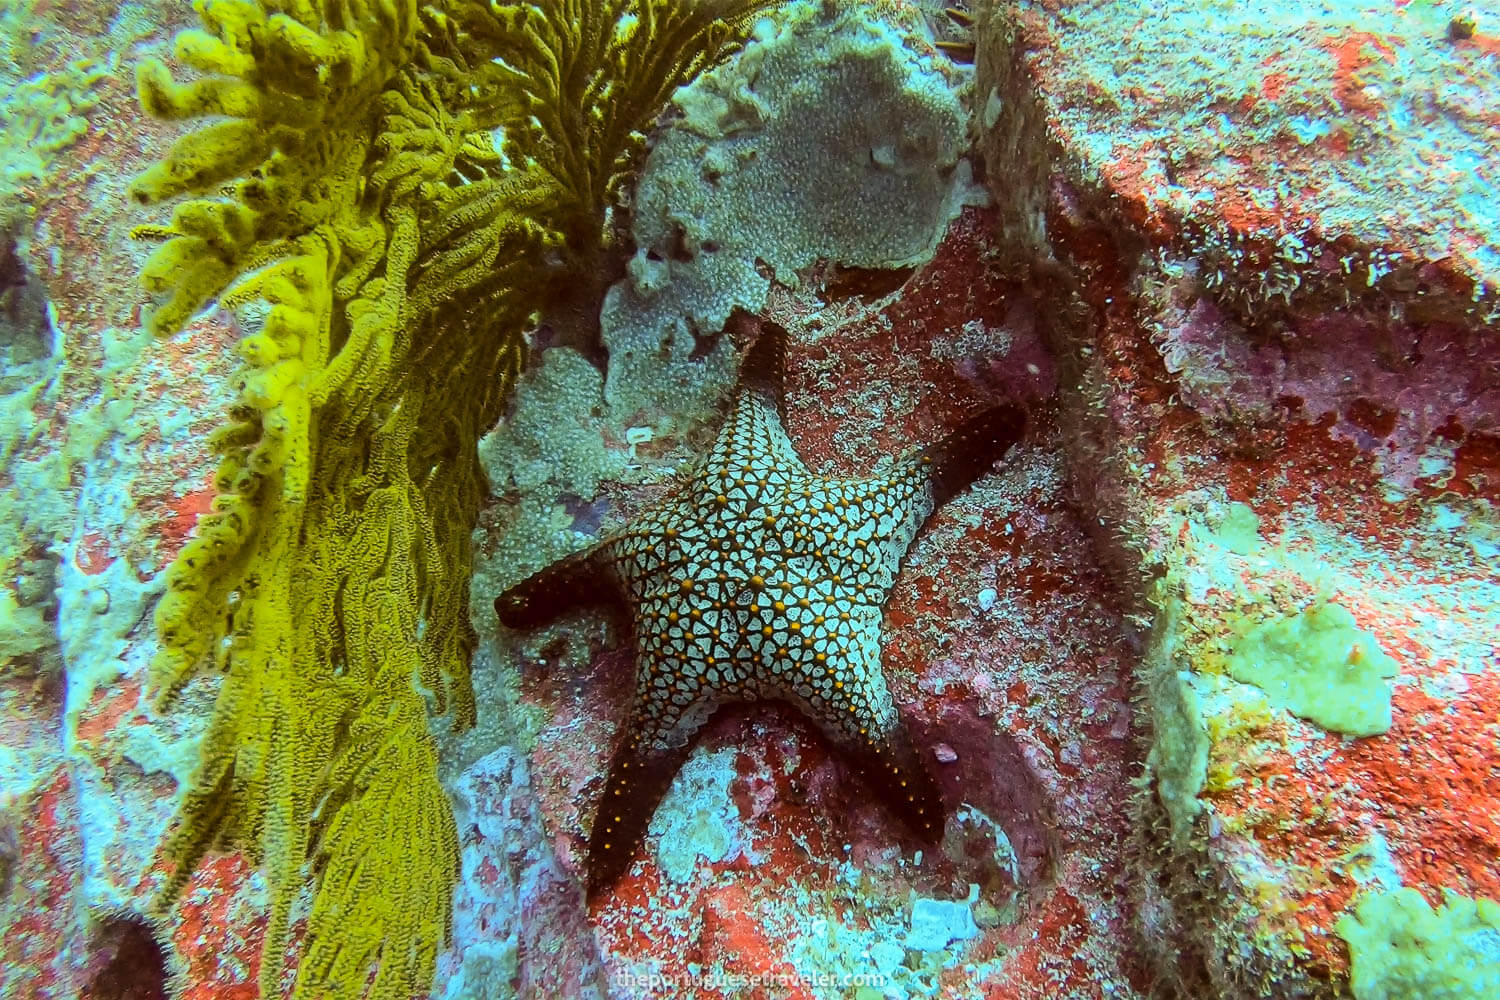 A sea star at the wall of Kicker Rock